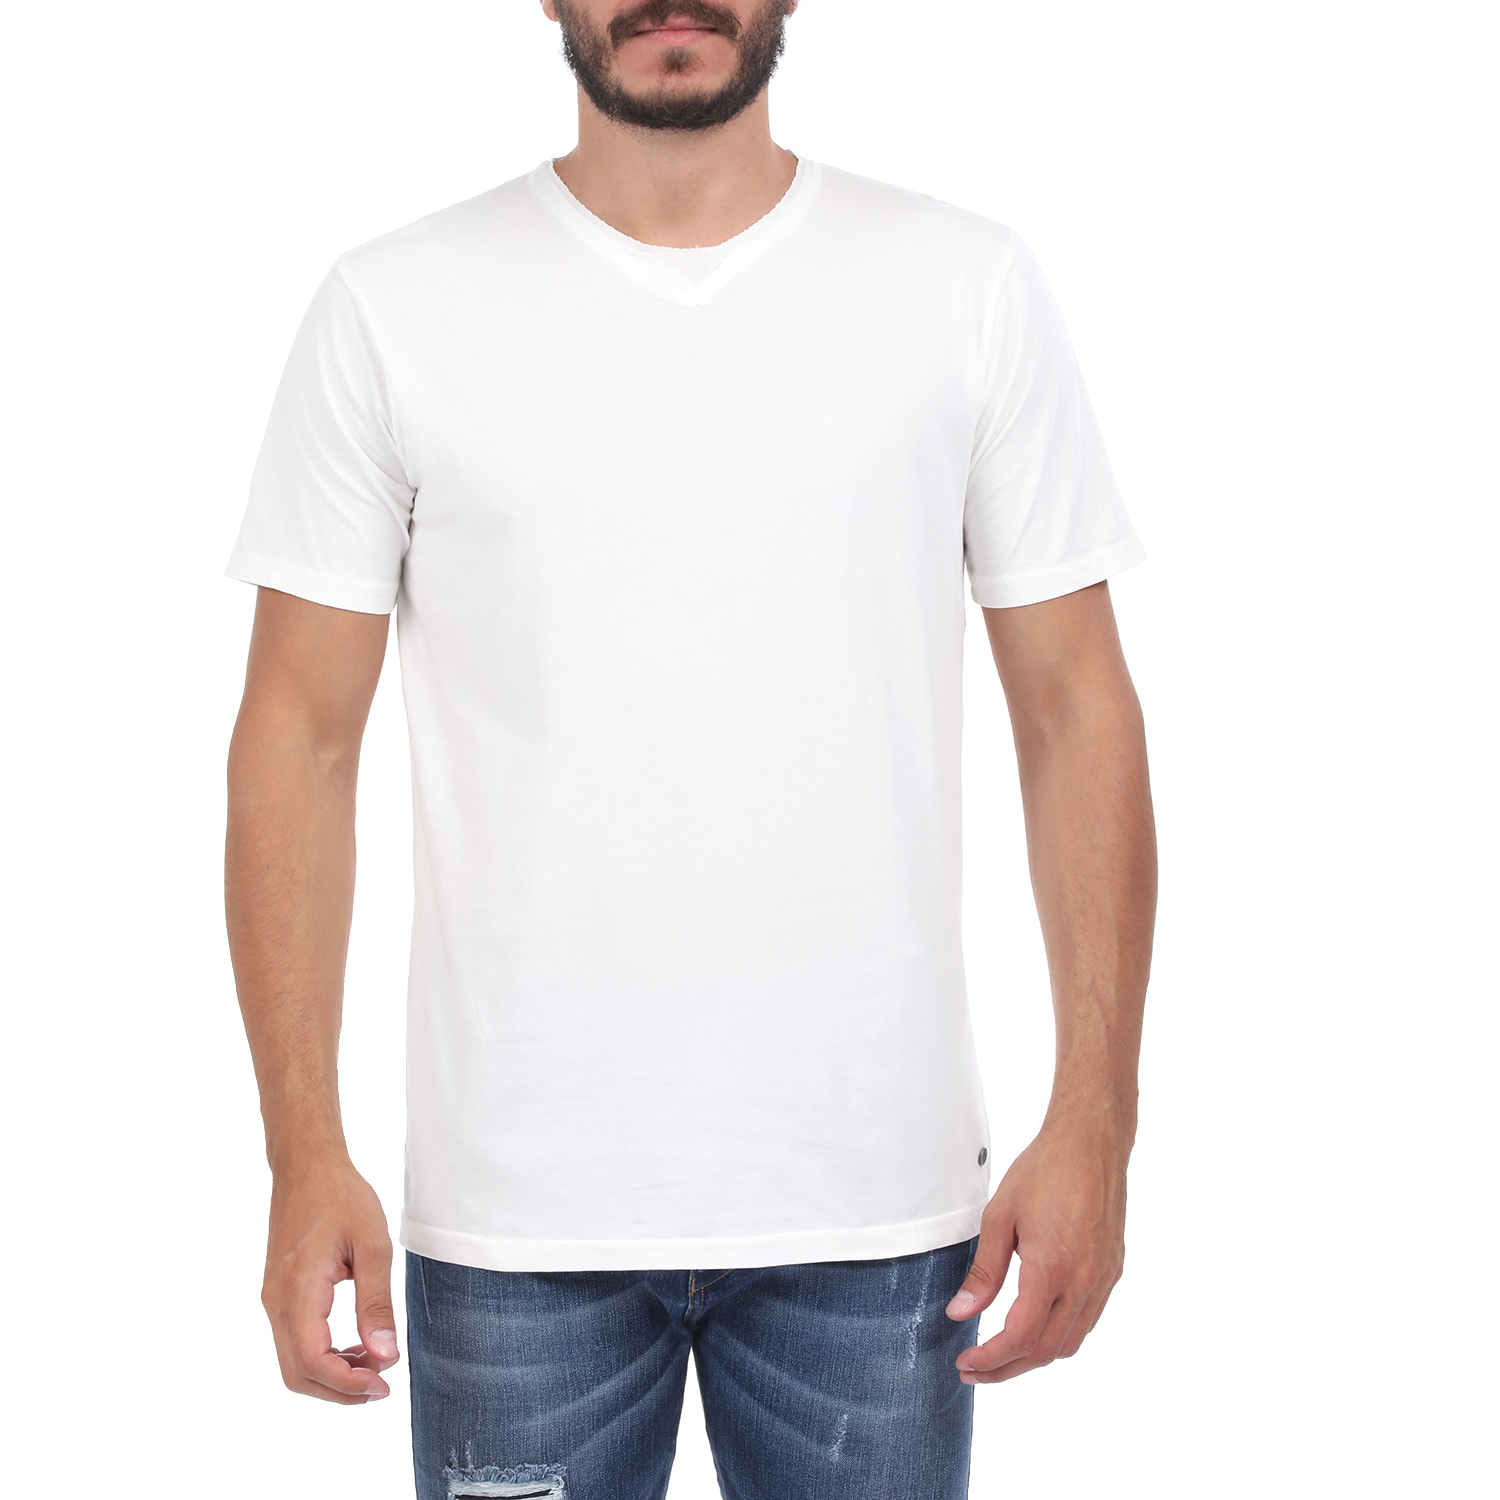 Ανδρικά/Ρούχα/Μπλούζες/Κοντομάνικες BATTERY - Ανδρική μπλούζα BATTERY SOLID1 GARMENT DYE λευκή